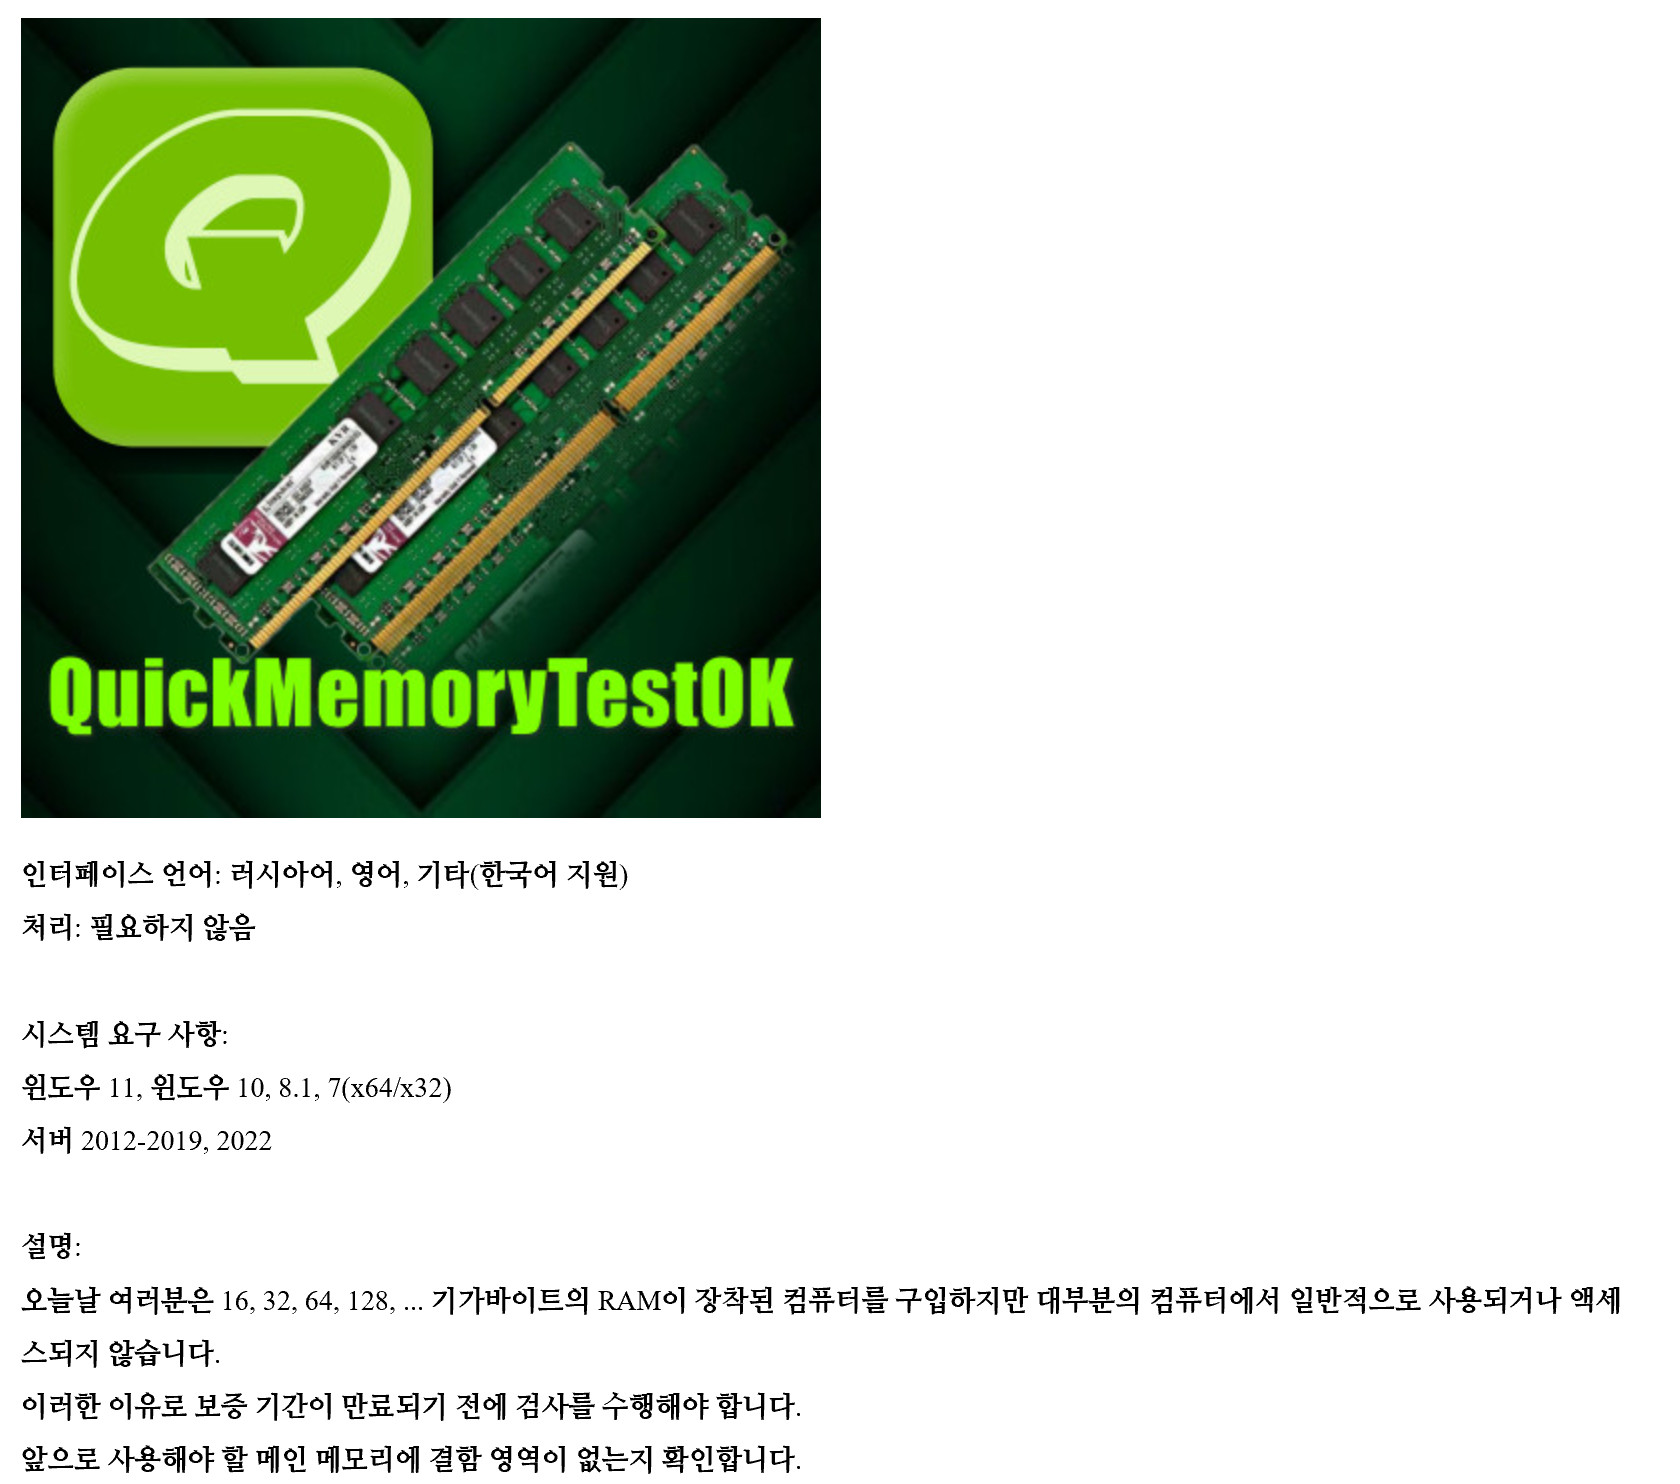 QuickMemoryTestOK 4.68 for iphone instal